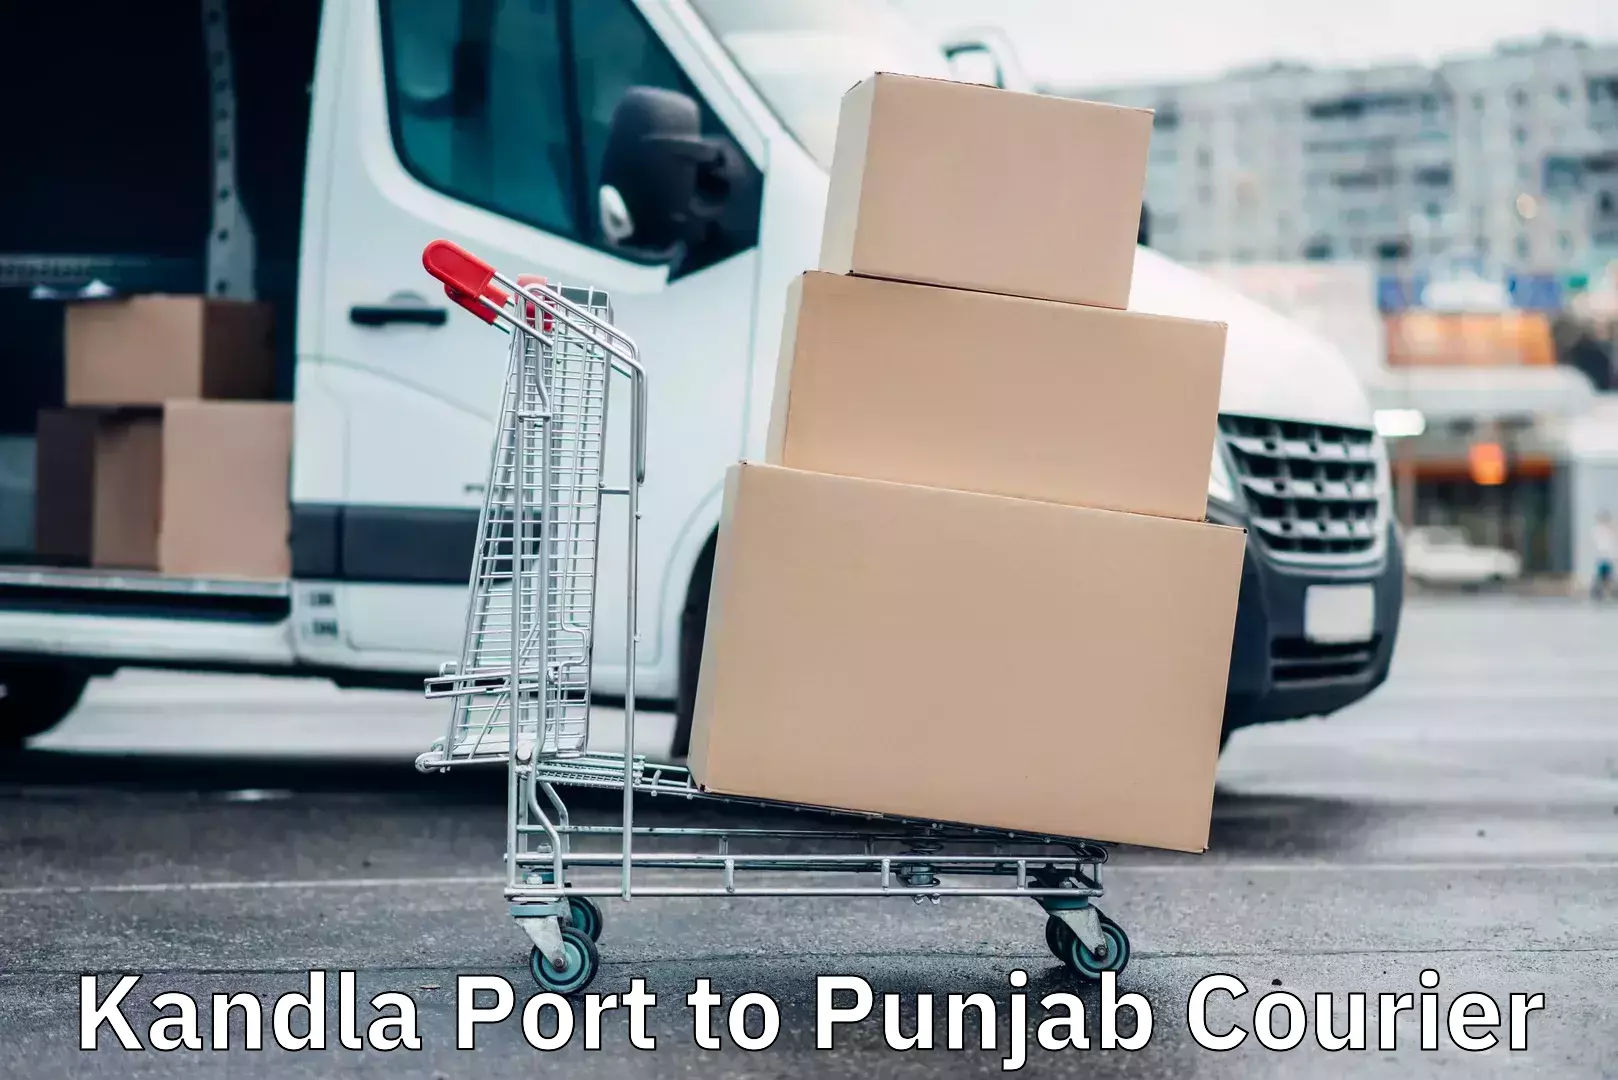 Emergency parcel delivery in Kandla Port to Punjab